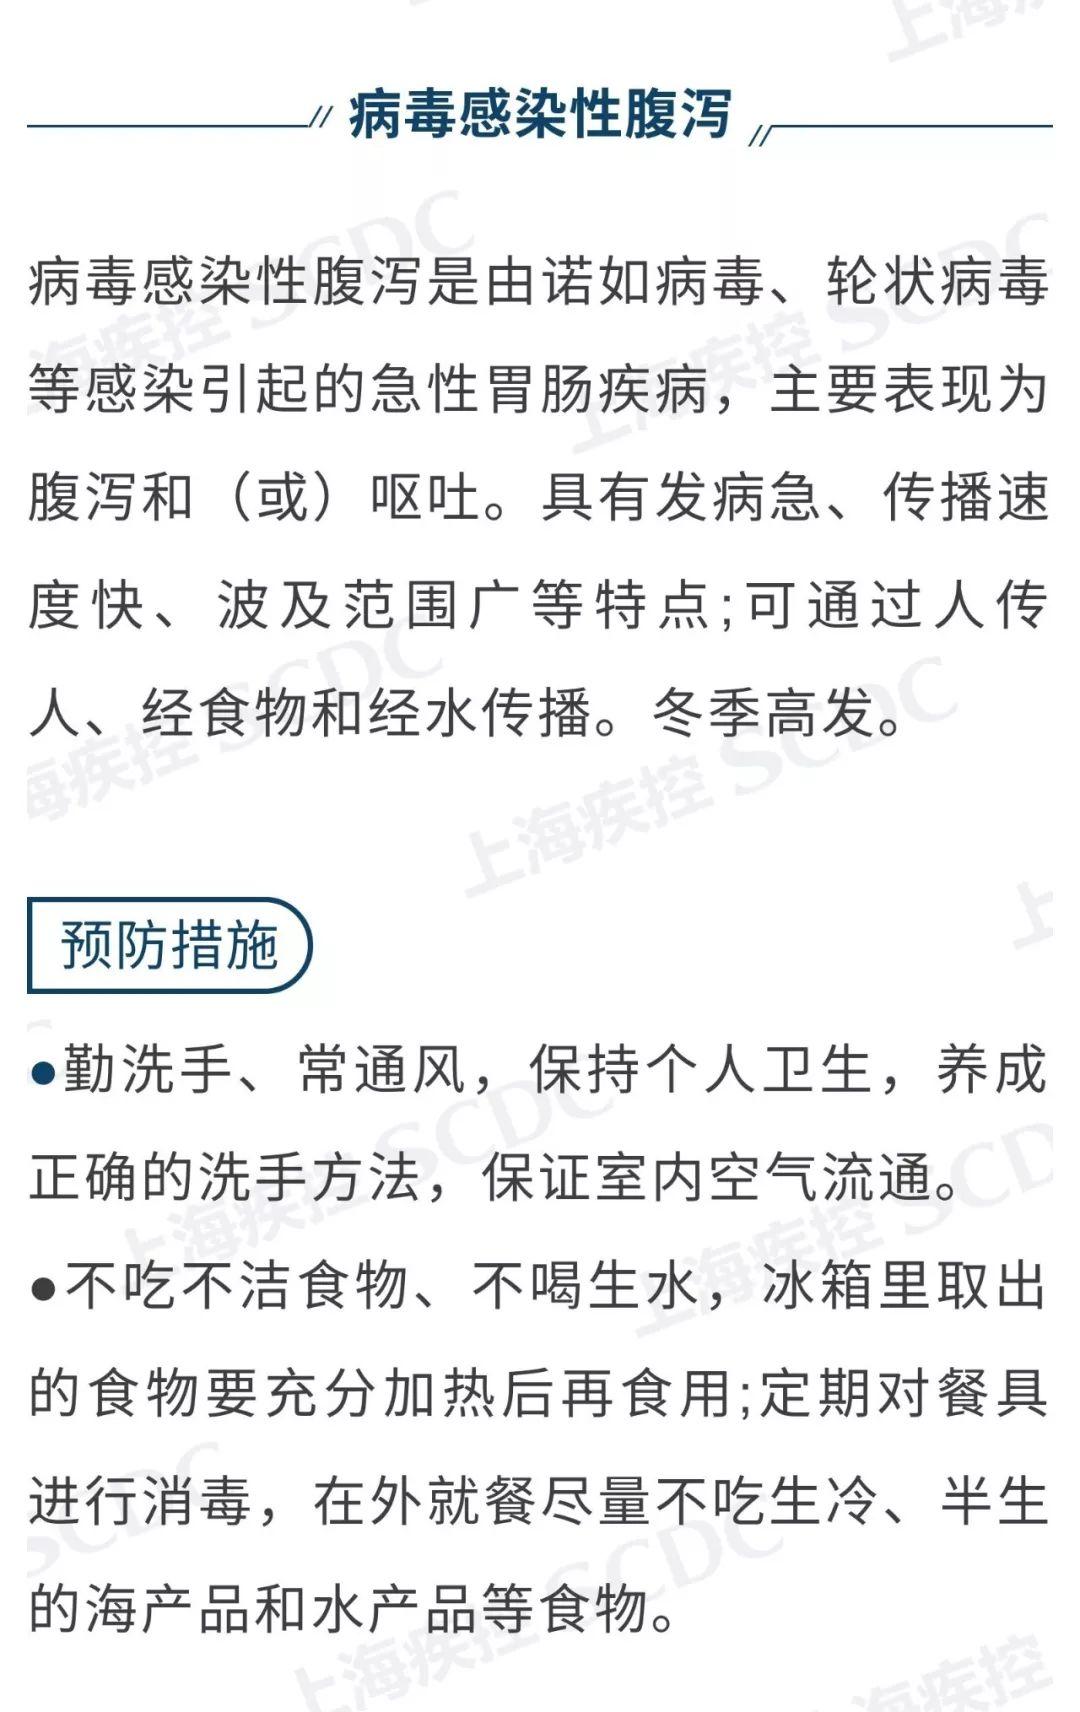 转发：2月防病提示 | 上海疾控中心图片_63